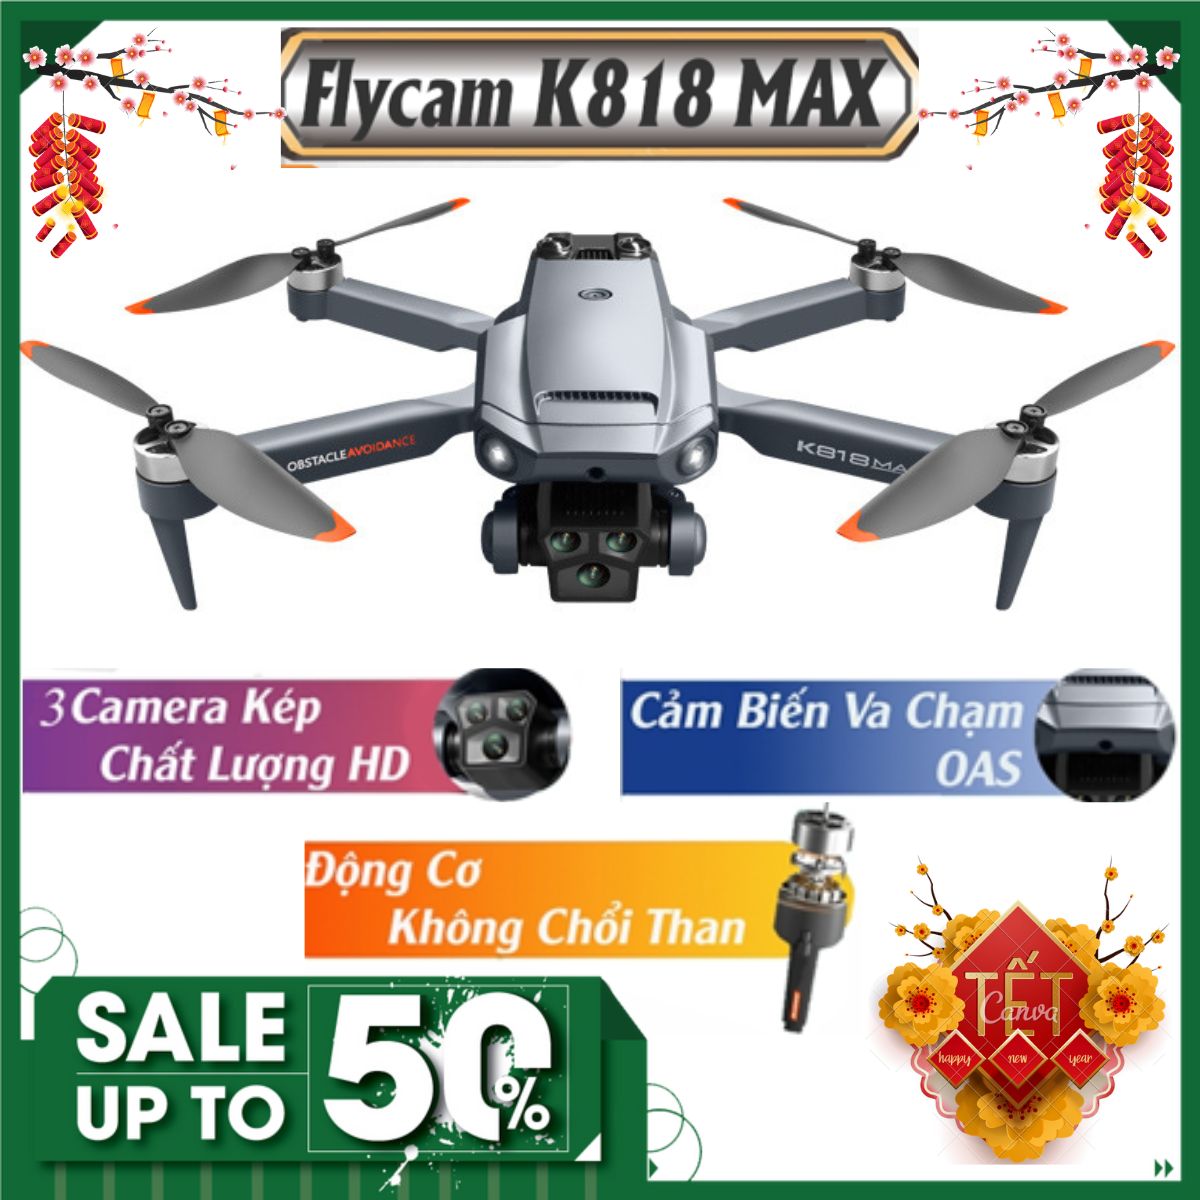 Flycam giá rẻ K818 Max, Máy bay điều khiển từ xa 4 cánh, Drone camera 4k, Playcam, Play camera giá rẻ hơn F11 Pro 4k, Mavic 2 Pro,SG700, Air 2S, P9